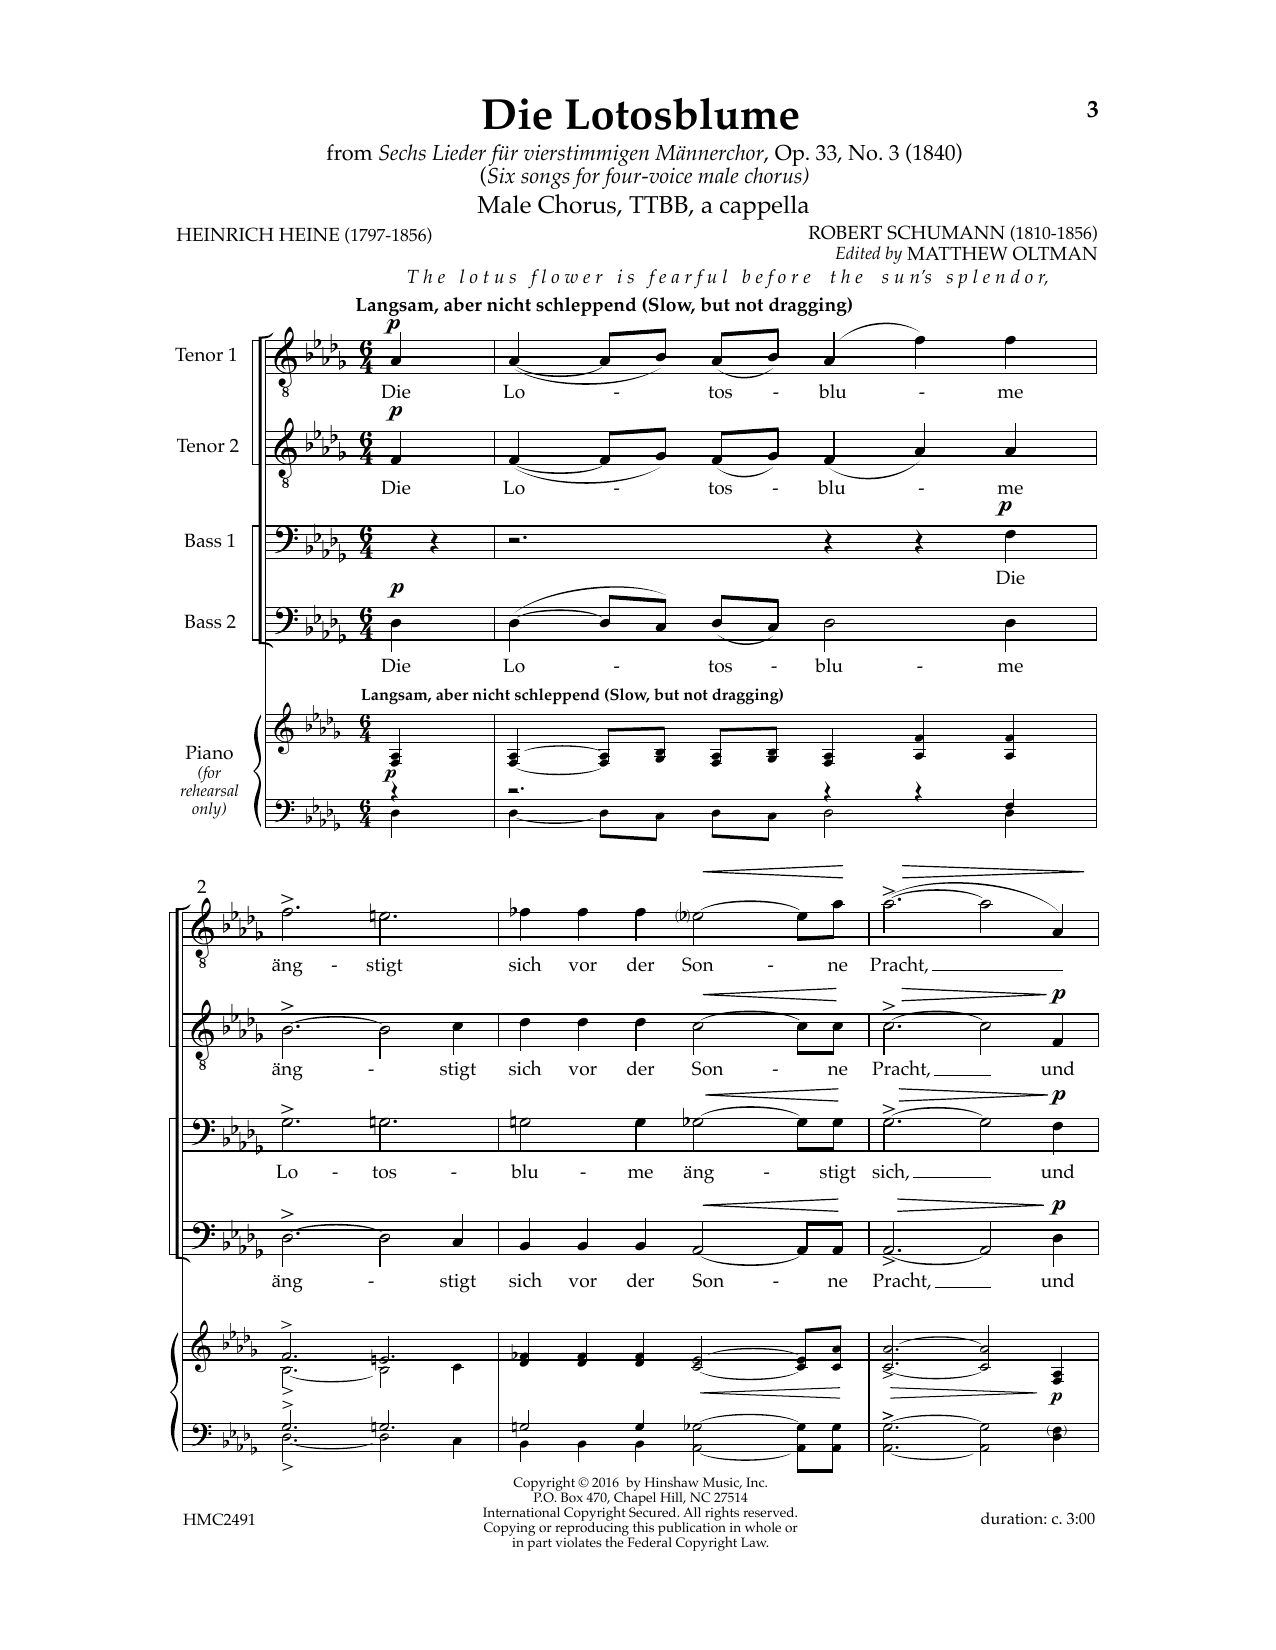 Download Robert Schumann Die Lotosblume (Ed. Matthew D. Oltman) Sheet Music